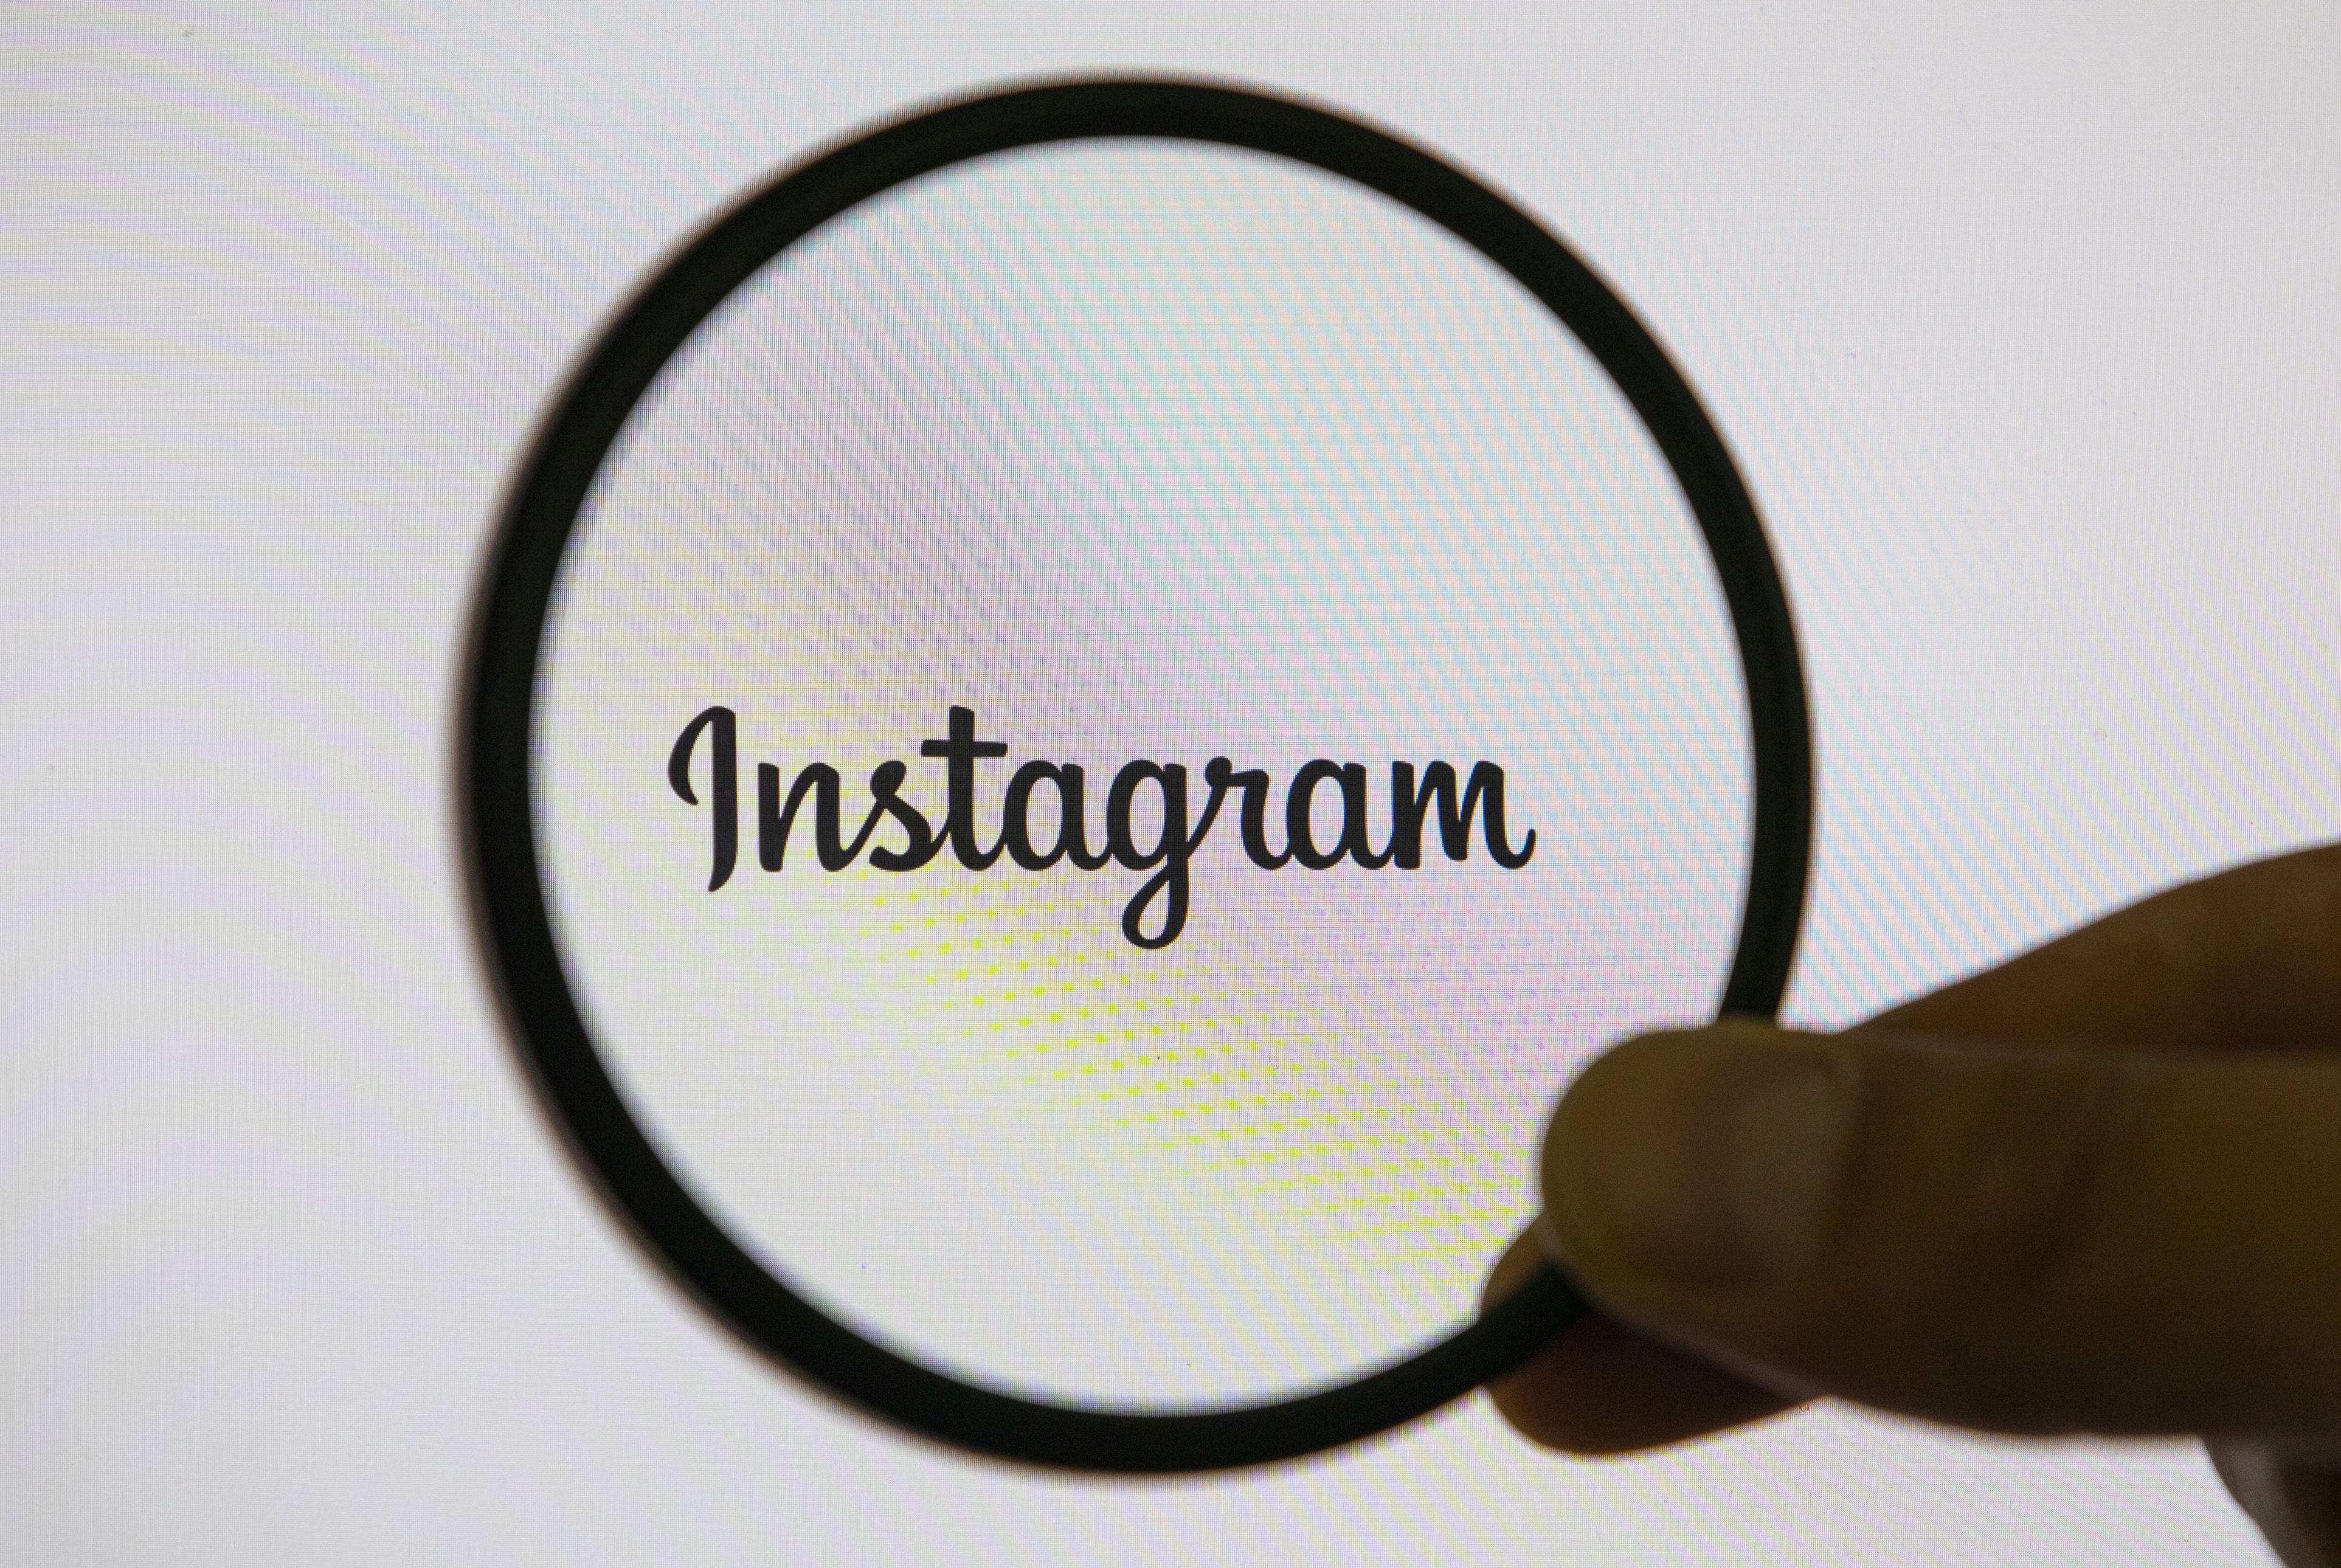 Instagram lansează o nouă funcție. Utilizatorii vor putea face cumpărături direct din fotografii!